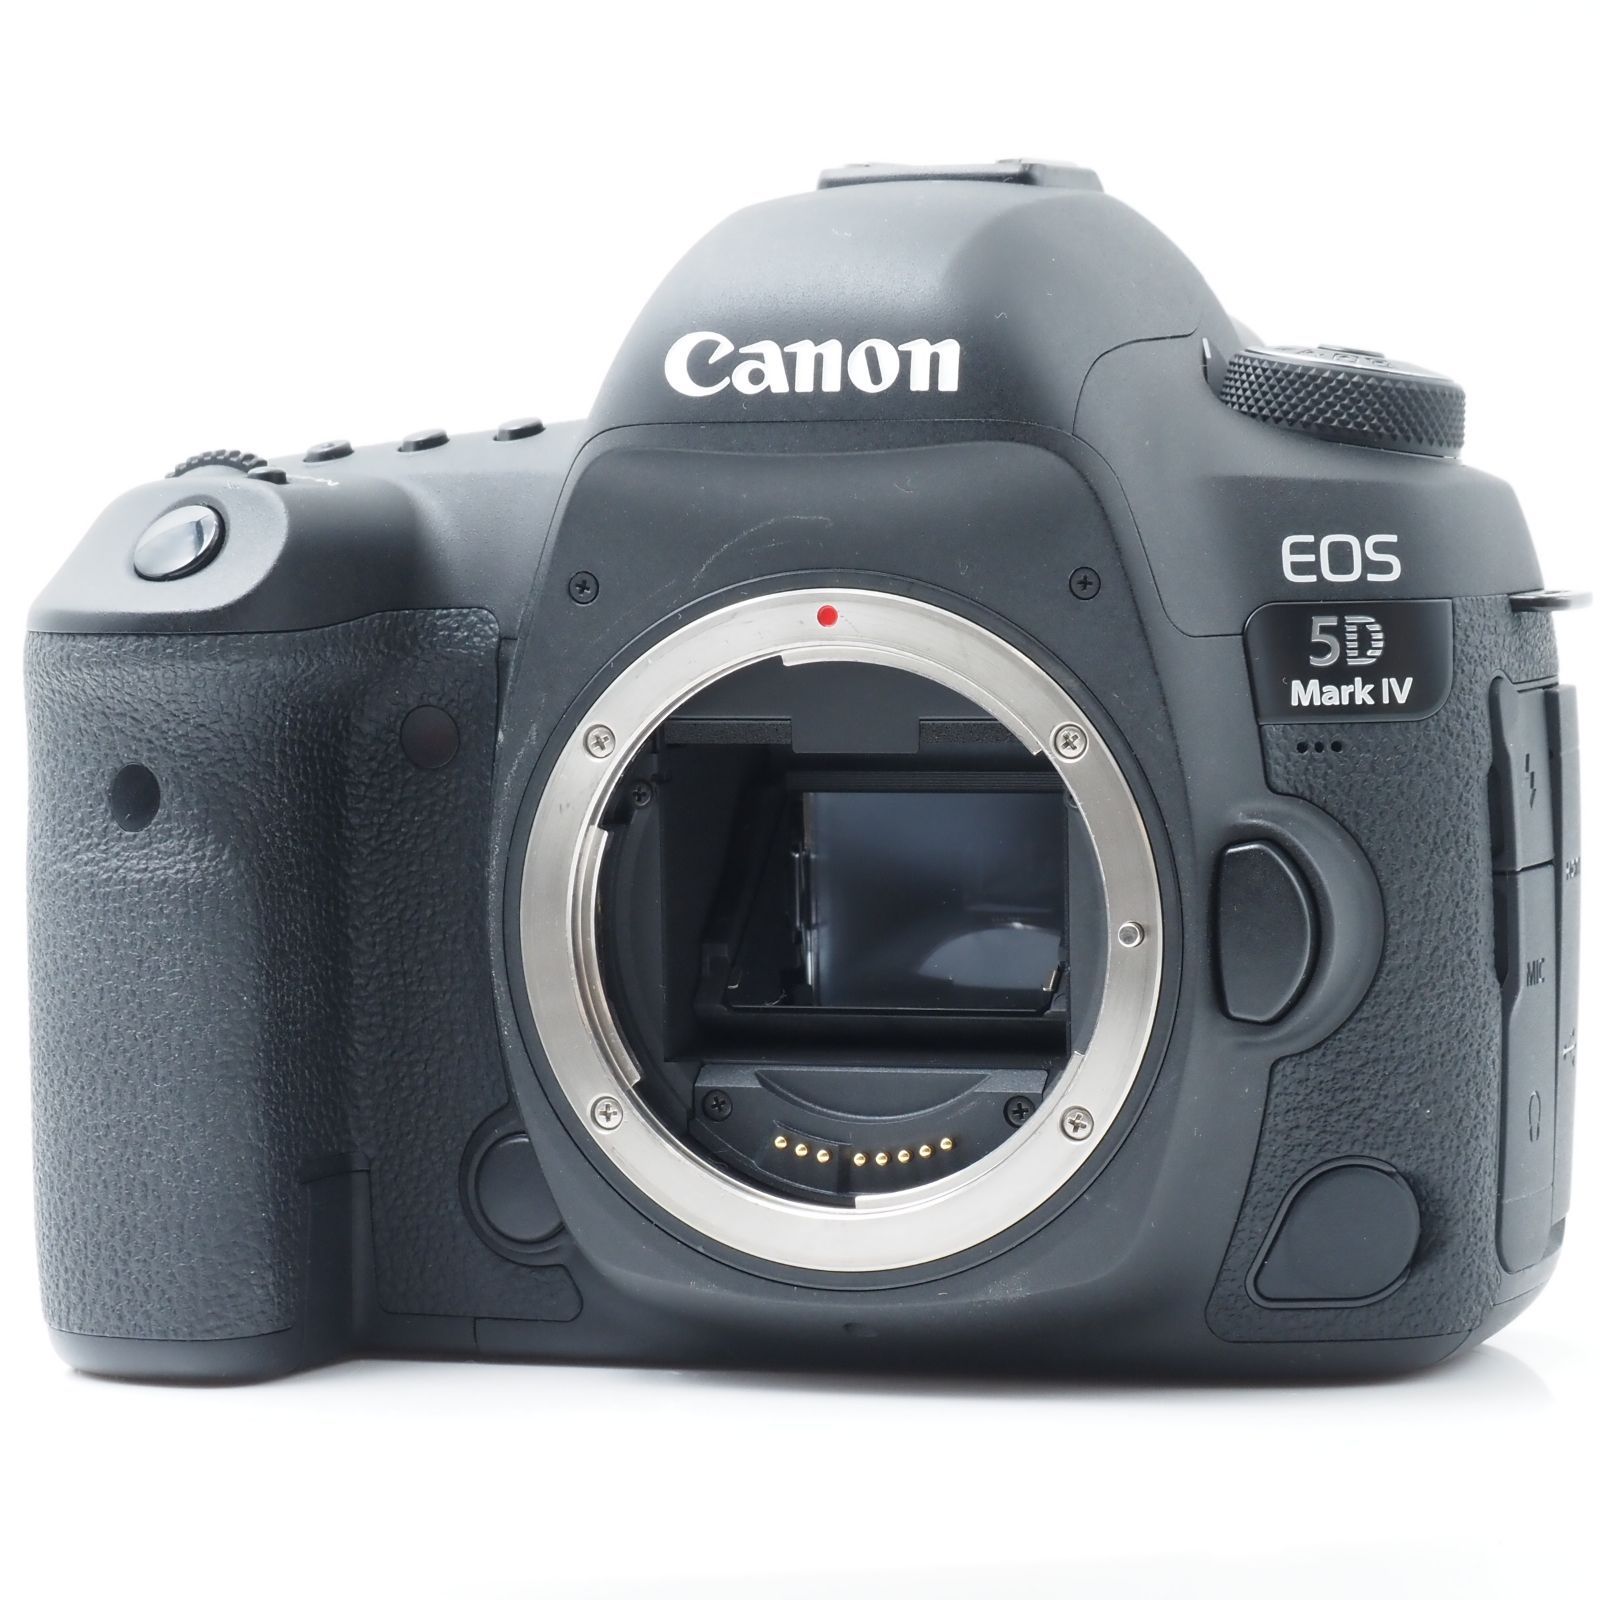 Canon デジタル一眼レフカメラ EOS 5D Mark IV ボディー EOS5DMK4 デジタル一眼カメラ